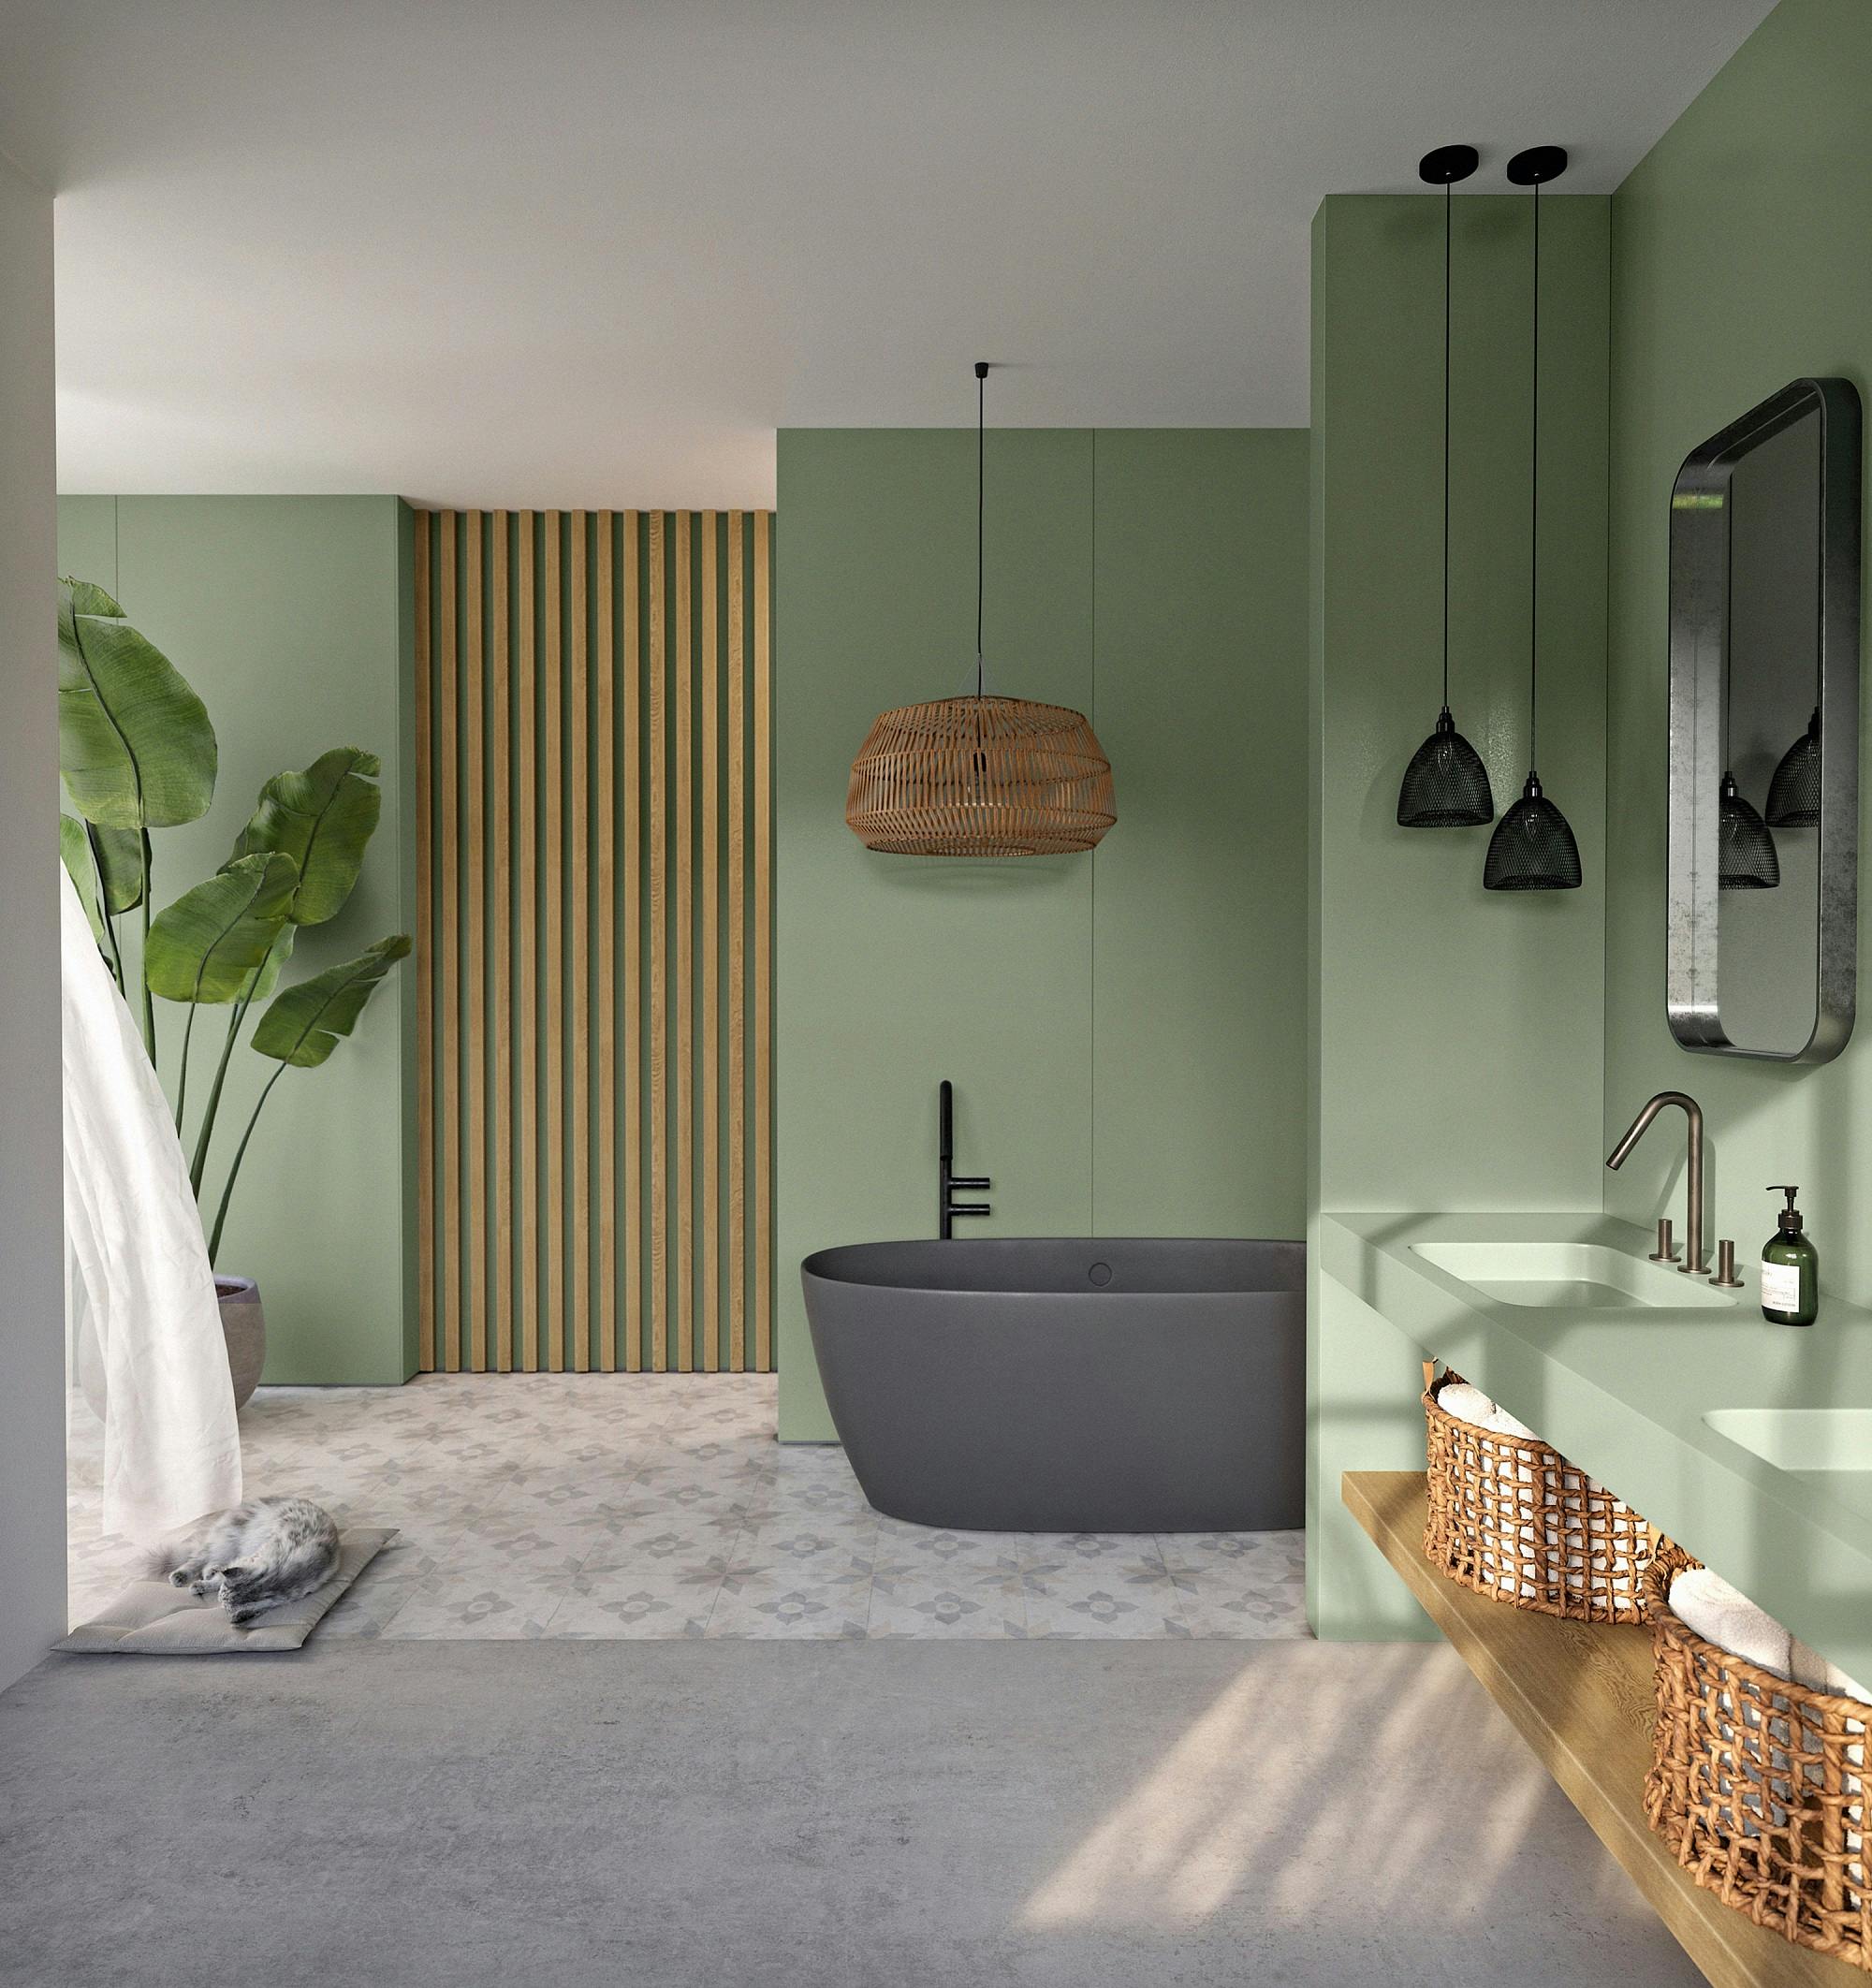 Cuartos de baño modernos con plato de ducha que son pura inspiración